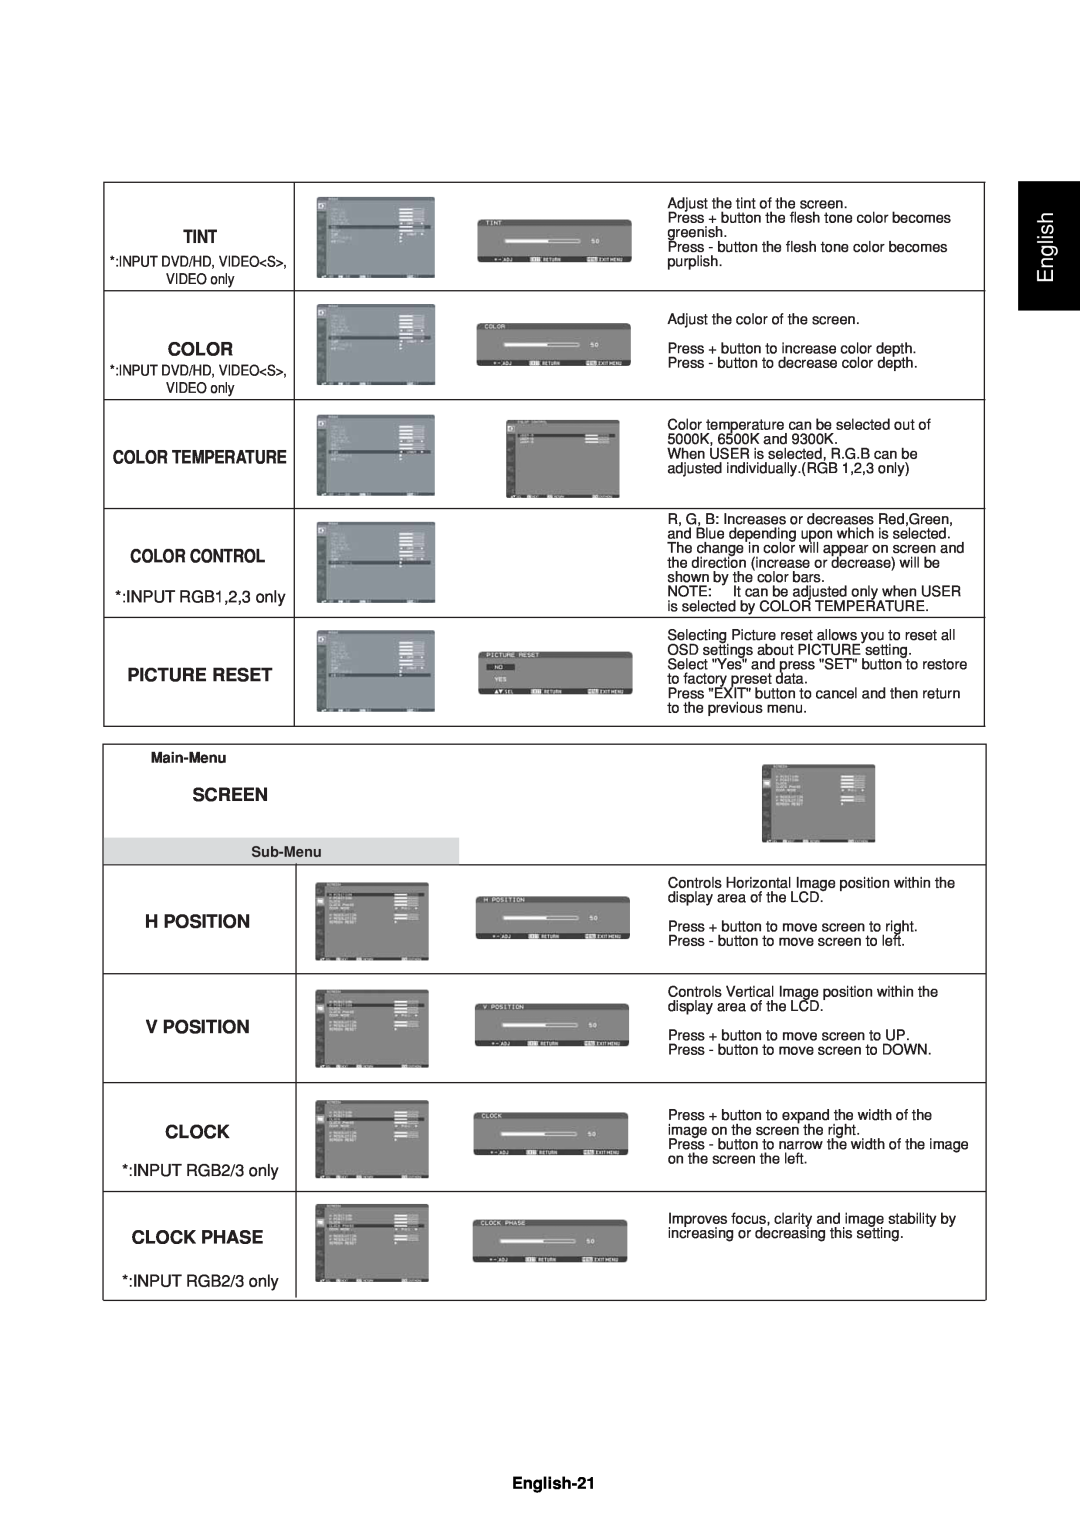 Mitsubishi Electronics LDT37IV (BH544), LDT32IV (BH548) English, Color Temperature, Color Control, Main-Menu, Sub-Menu 